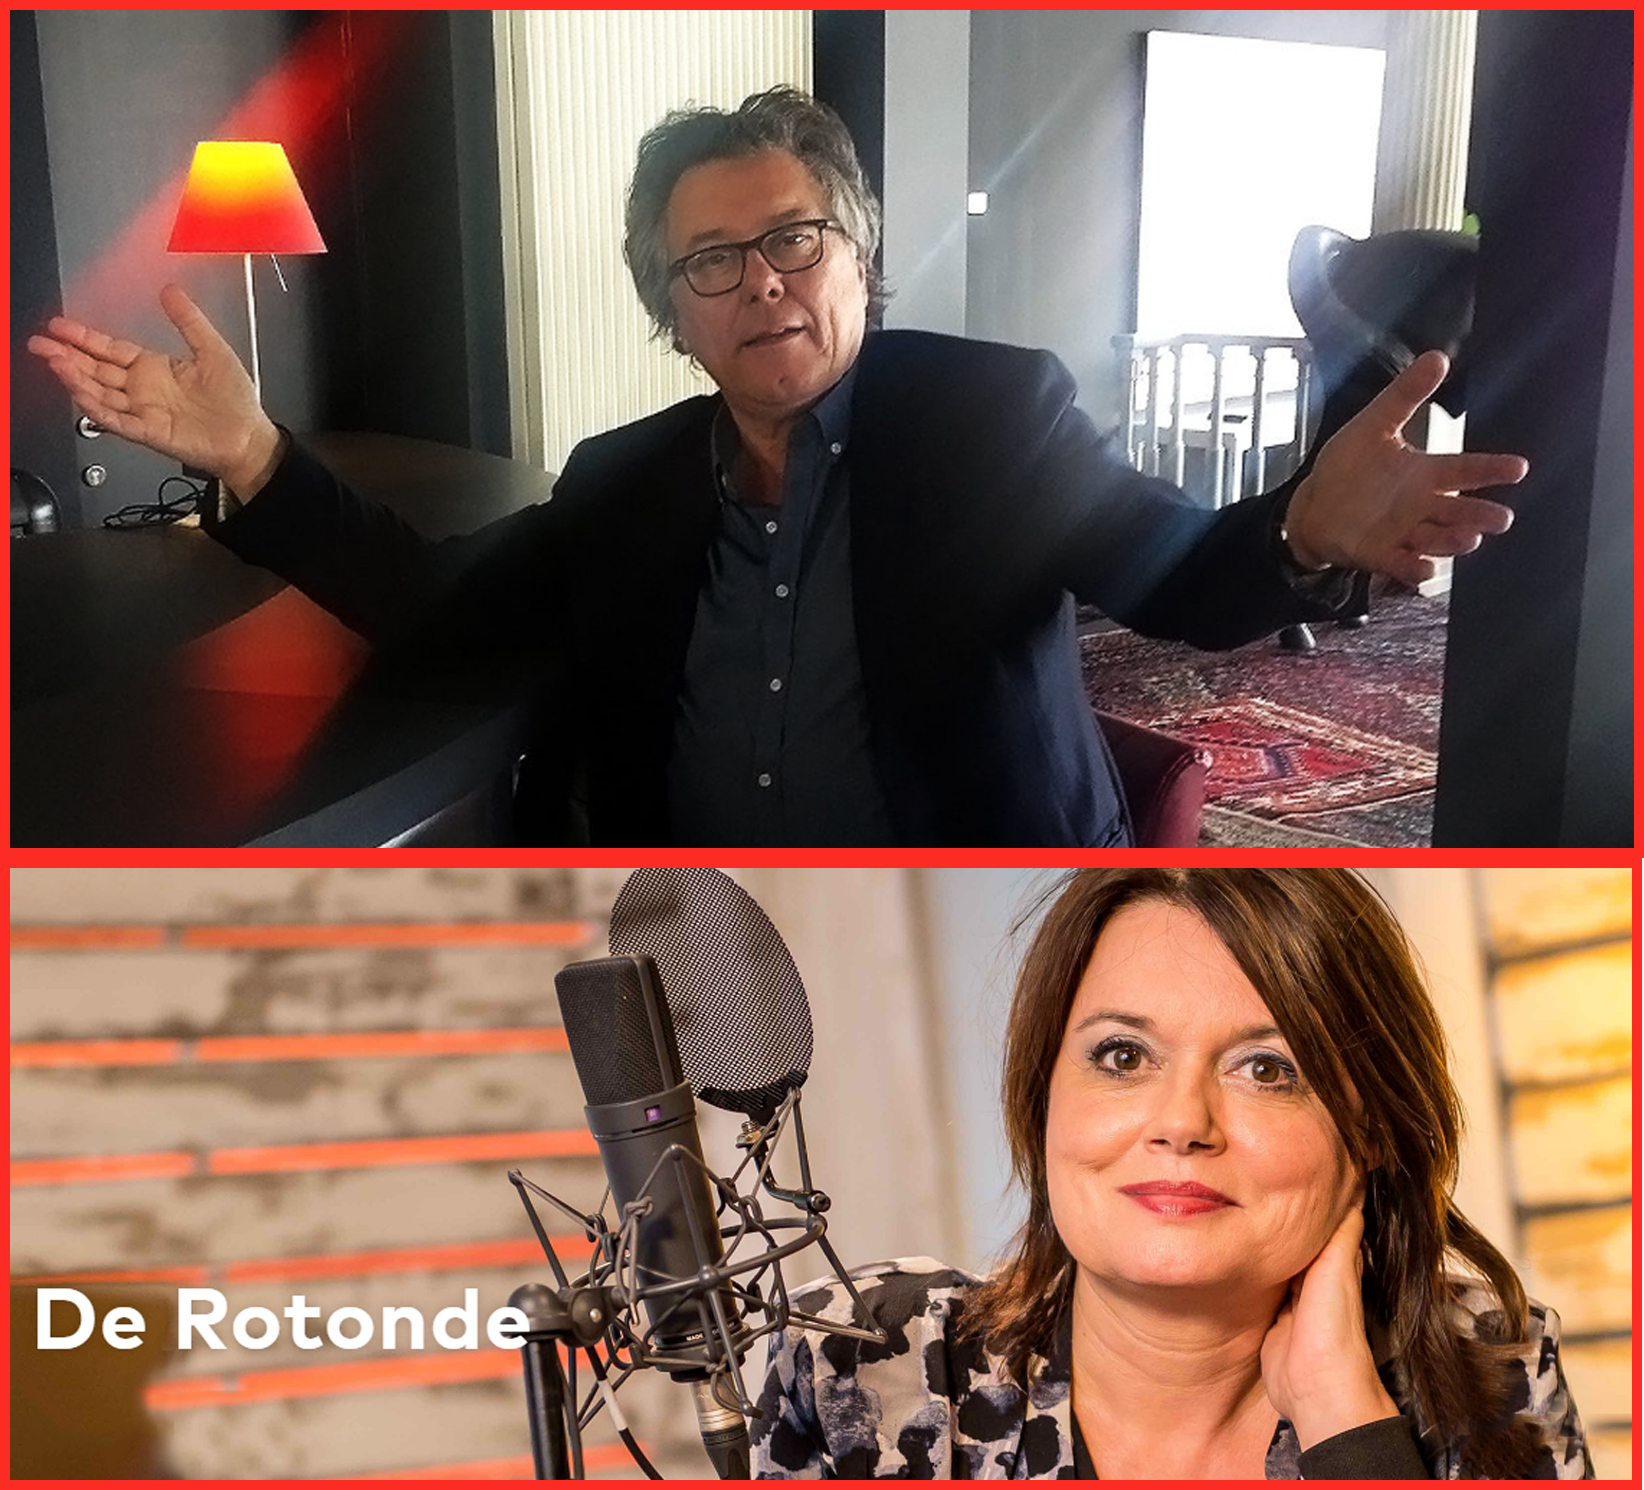 Johan op Radio 2 in 'De Rotonde' op 30 april 2017